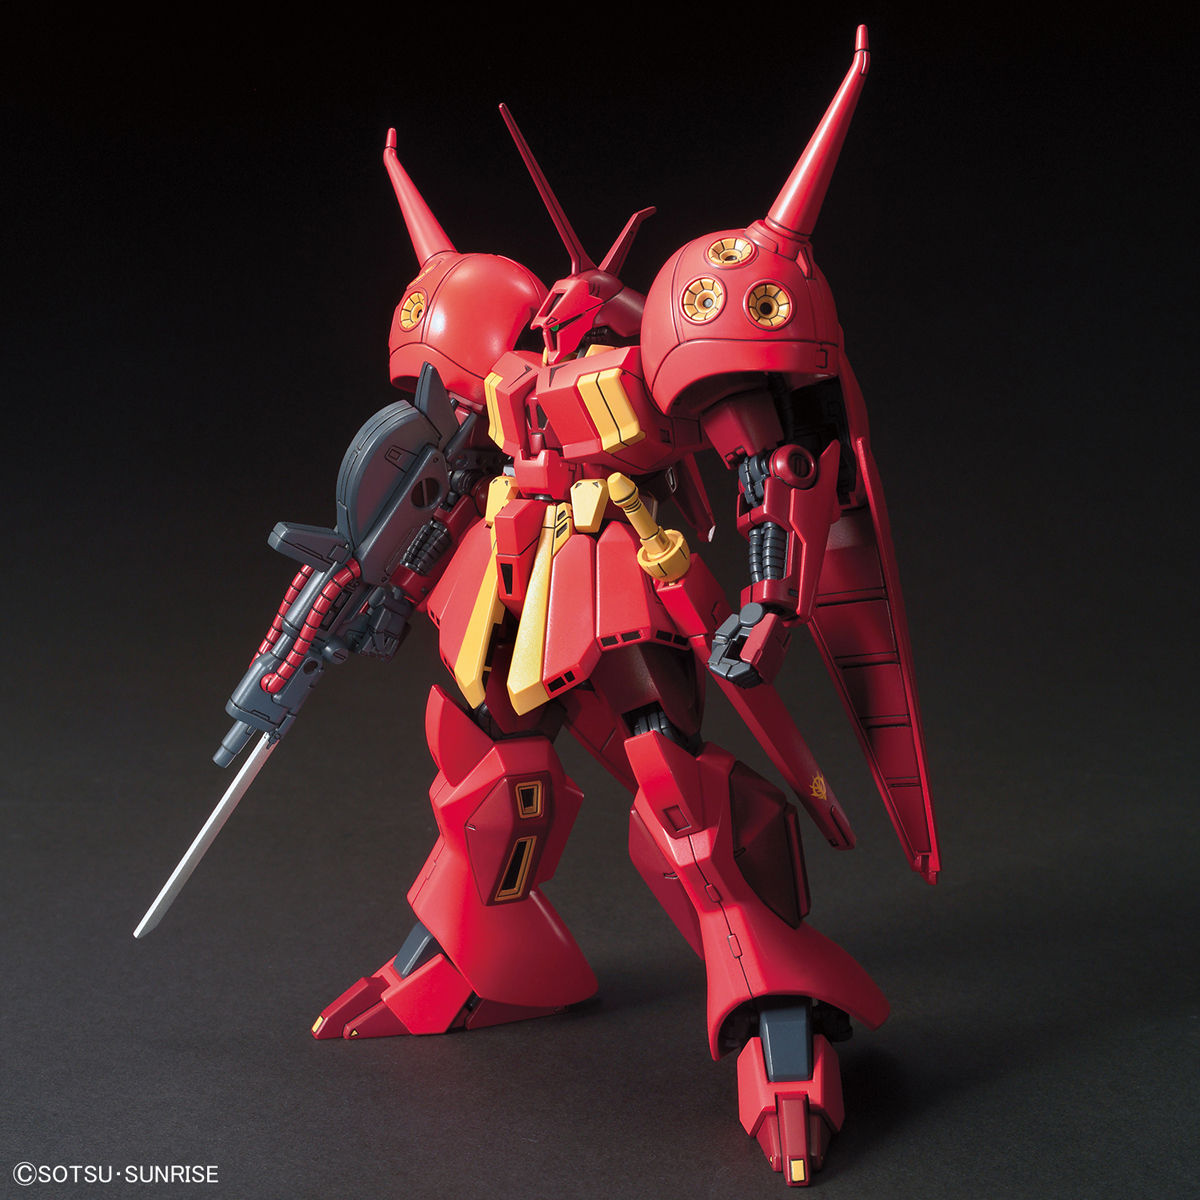 Bandai Gundam 1/144 HGUC #220 Gundam ZZ AMX-104 R-Jarja Model Kit USA